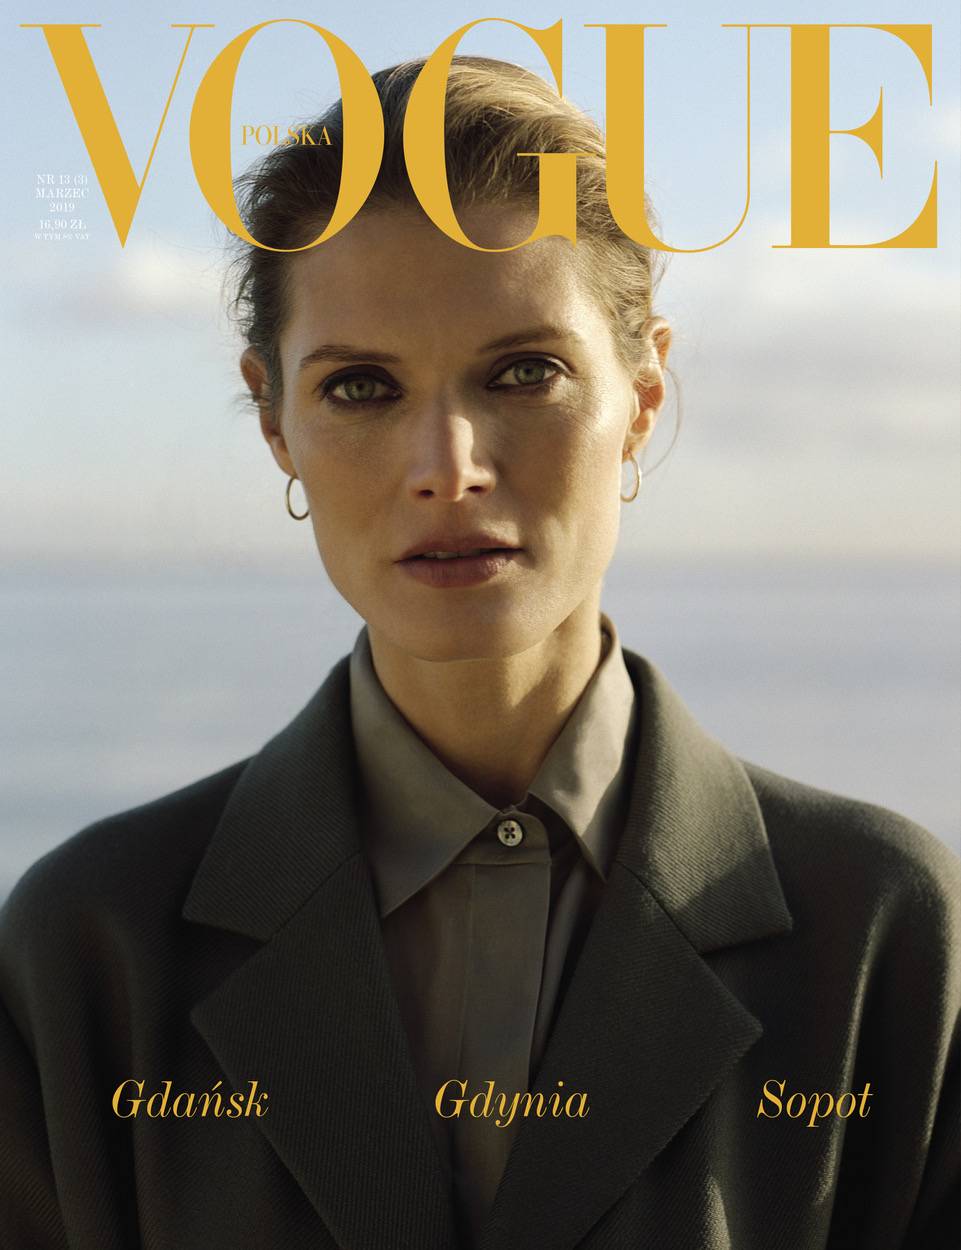 Okładka jubileuszowego wydania Vogue Polska (Fot. Hill & Aubrey)